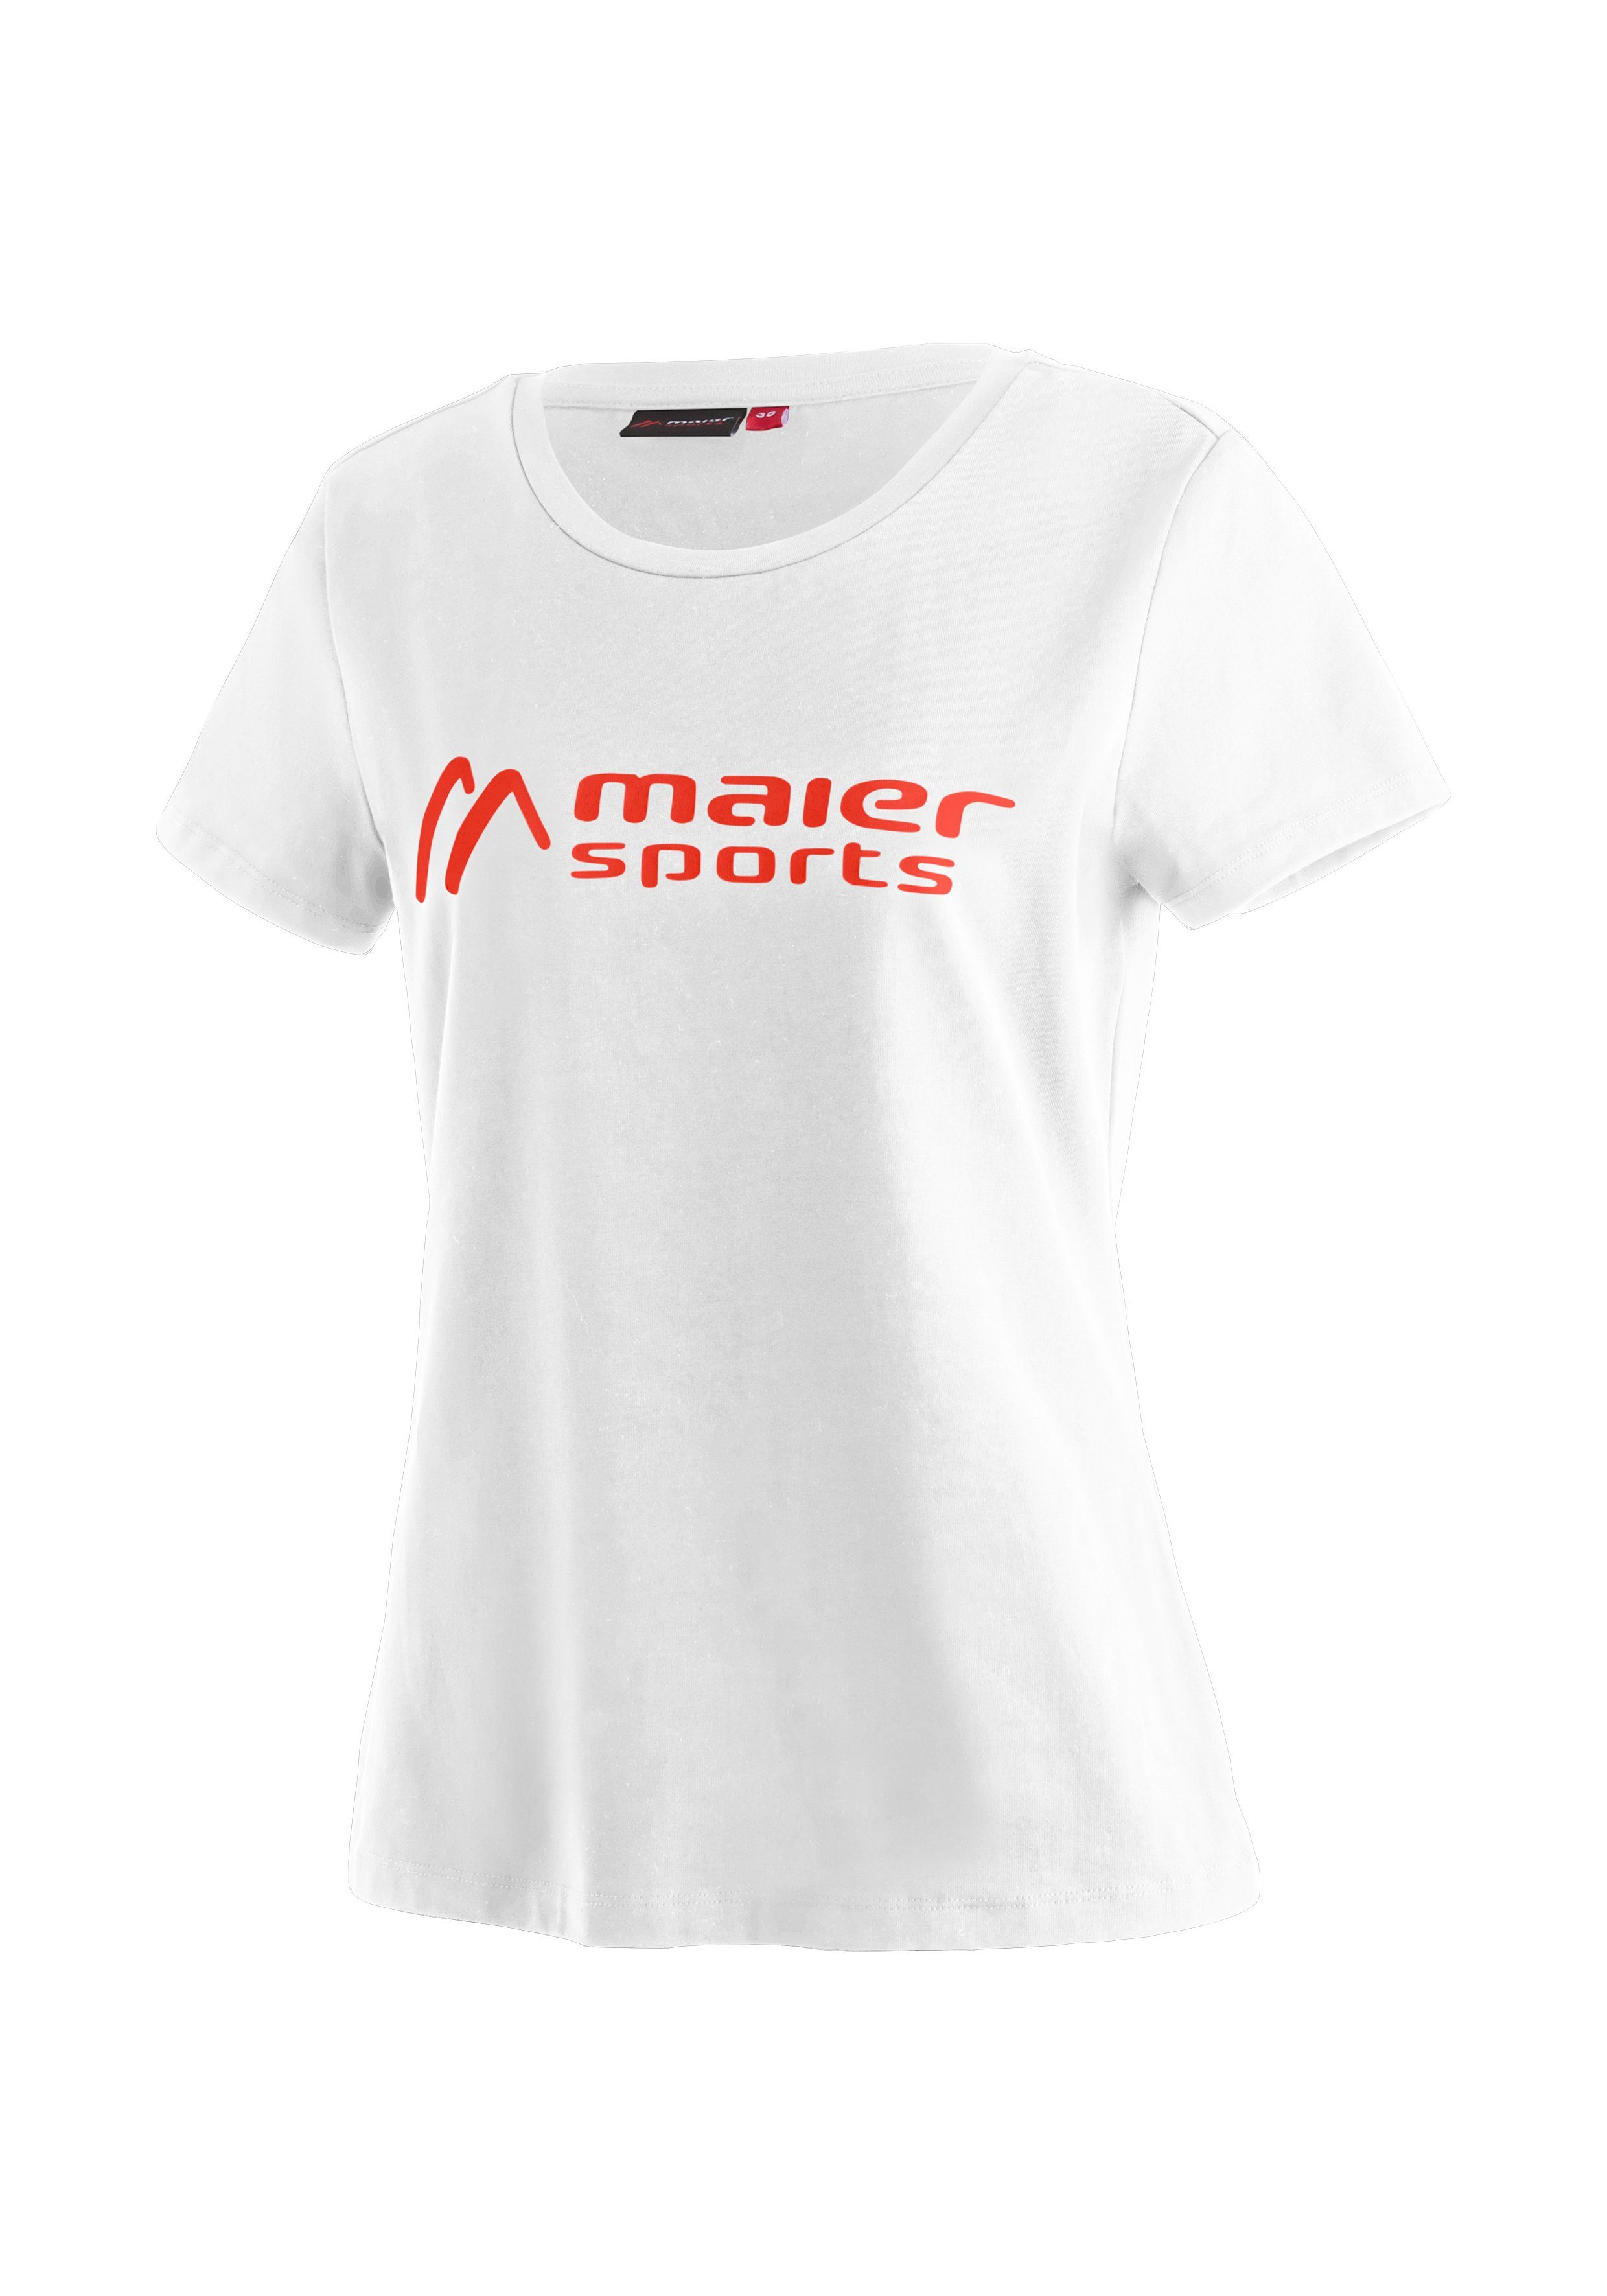 Tee elastischem MS Funktionsshirt weiß Maier aus W Vielseitiges Sports Material Rundhalsshirt